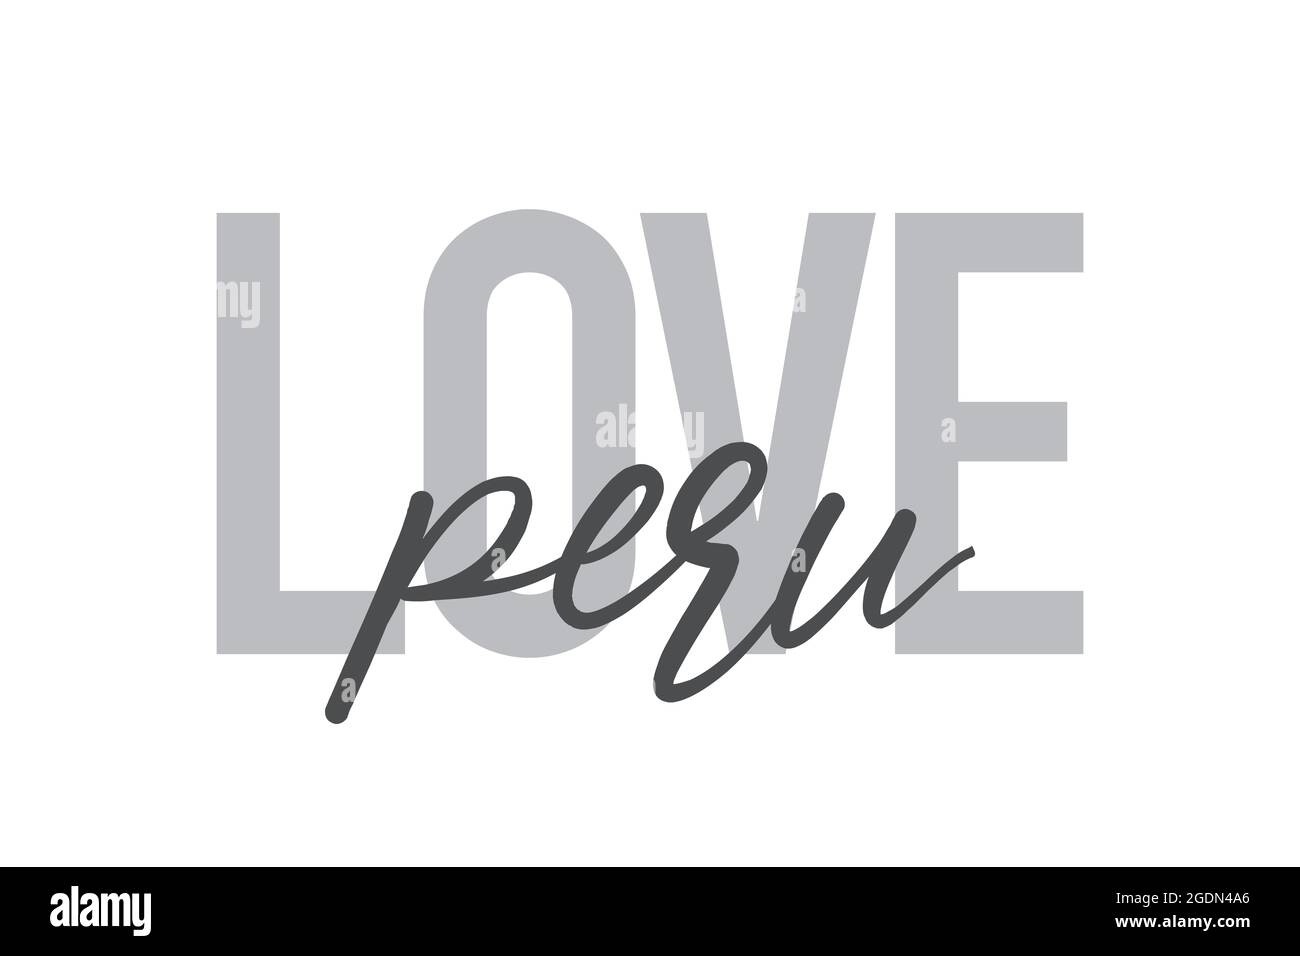 Design tipografico moderno, semplice e minimale di un detto 'Love Peru' in toni di grigio. Grafica vettoriale cool, urbana, trendy e giocosa con han Foto Stock